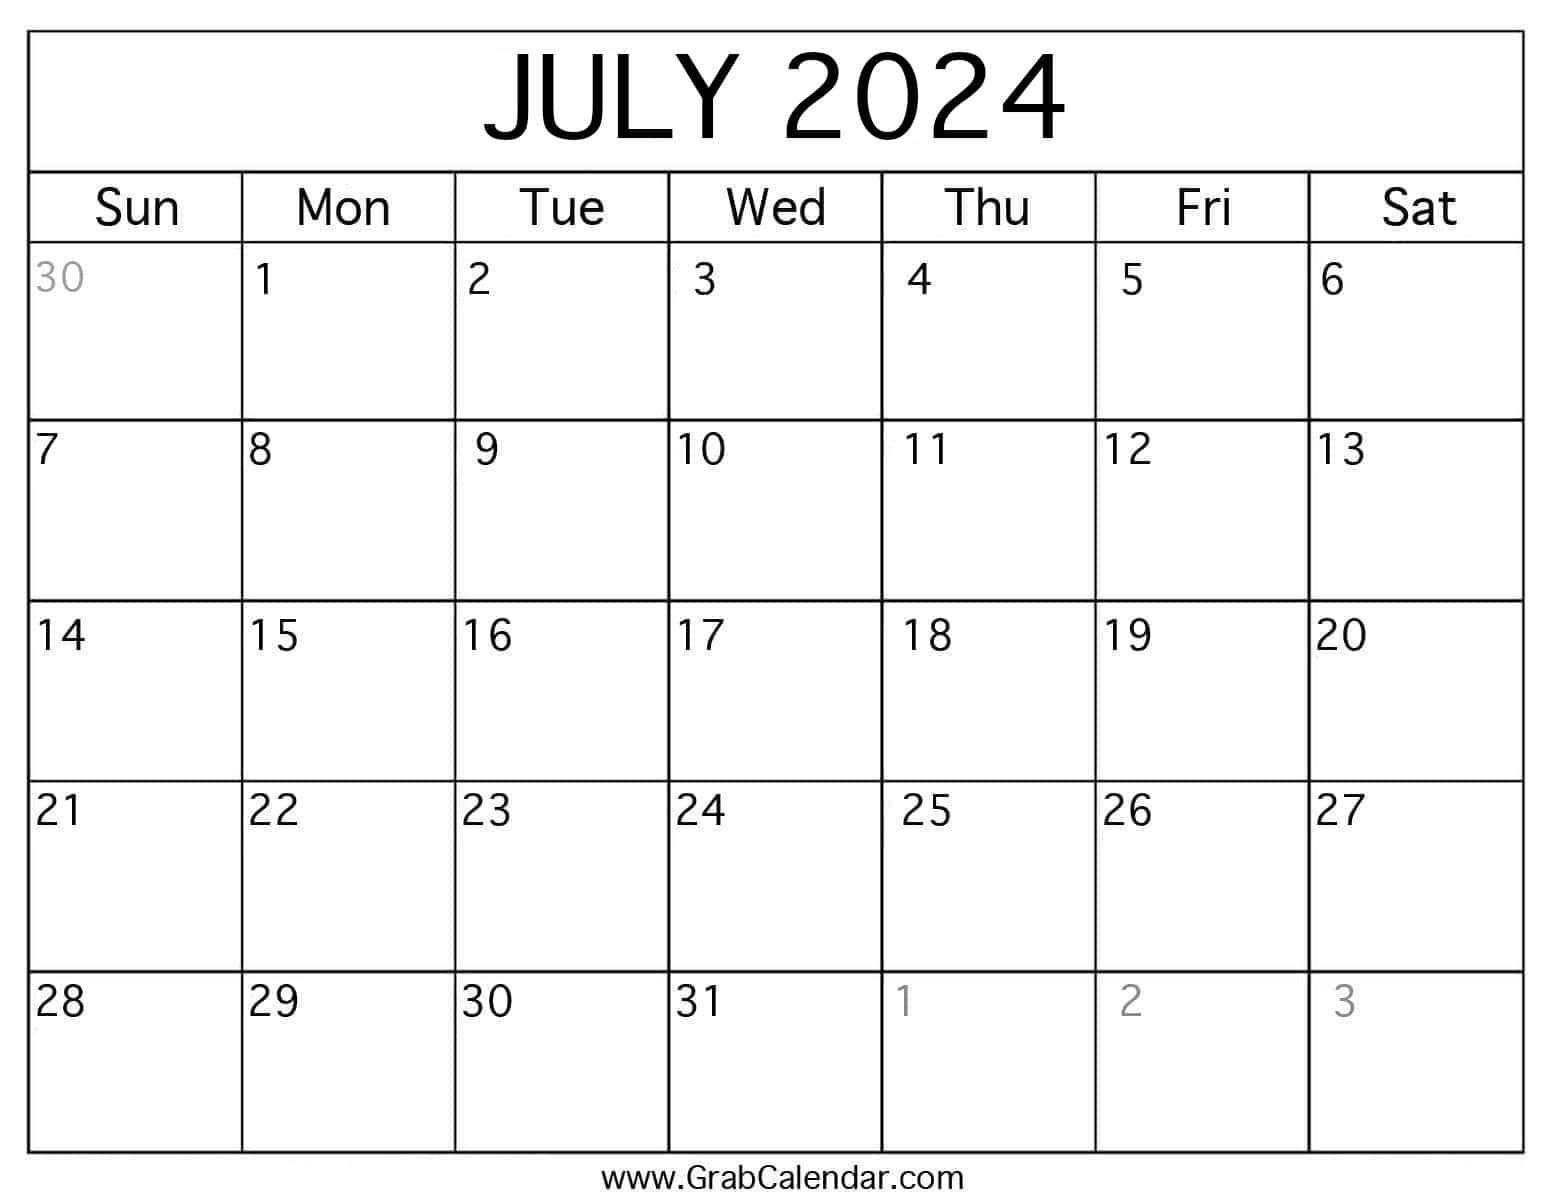 Printable July 2024 Calendar in 4 July 2024 Calendar Printable